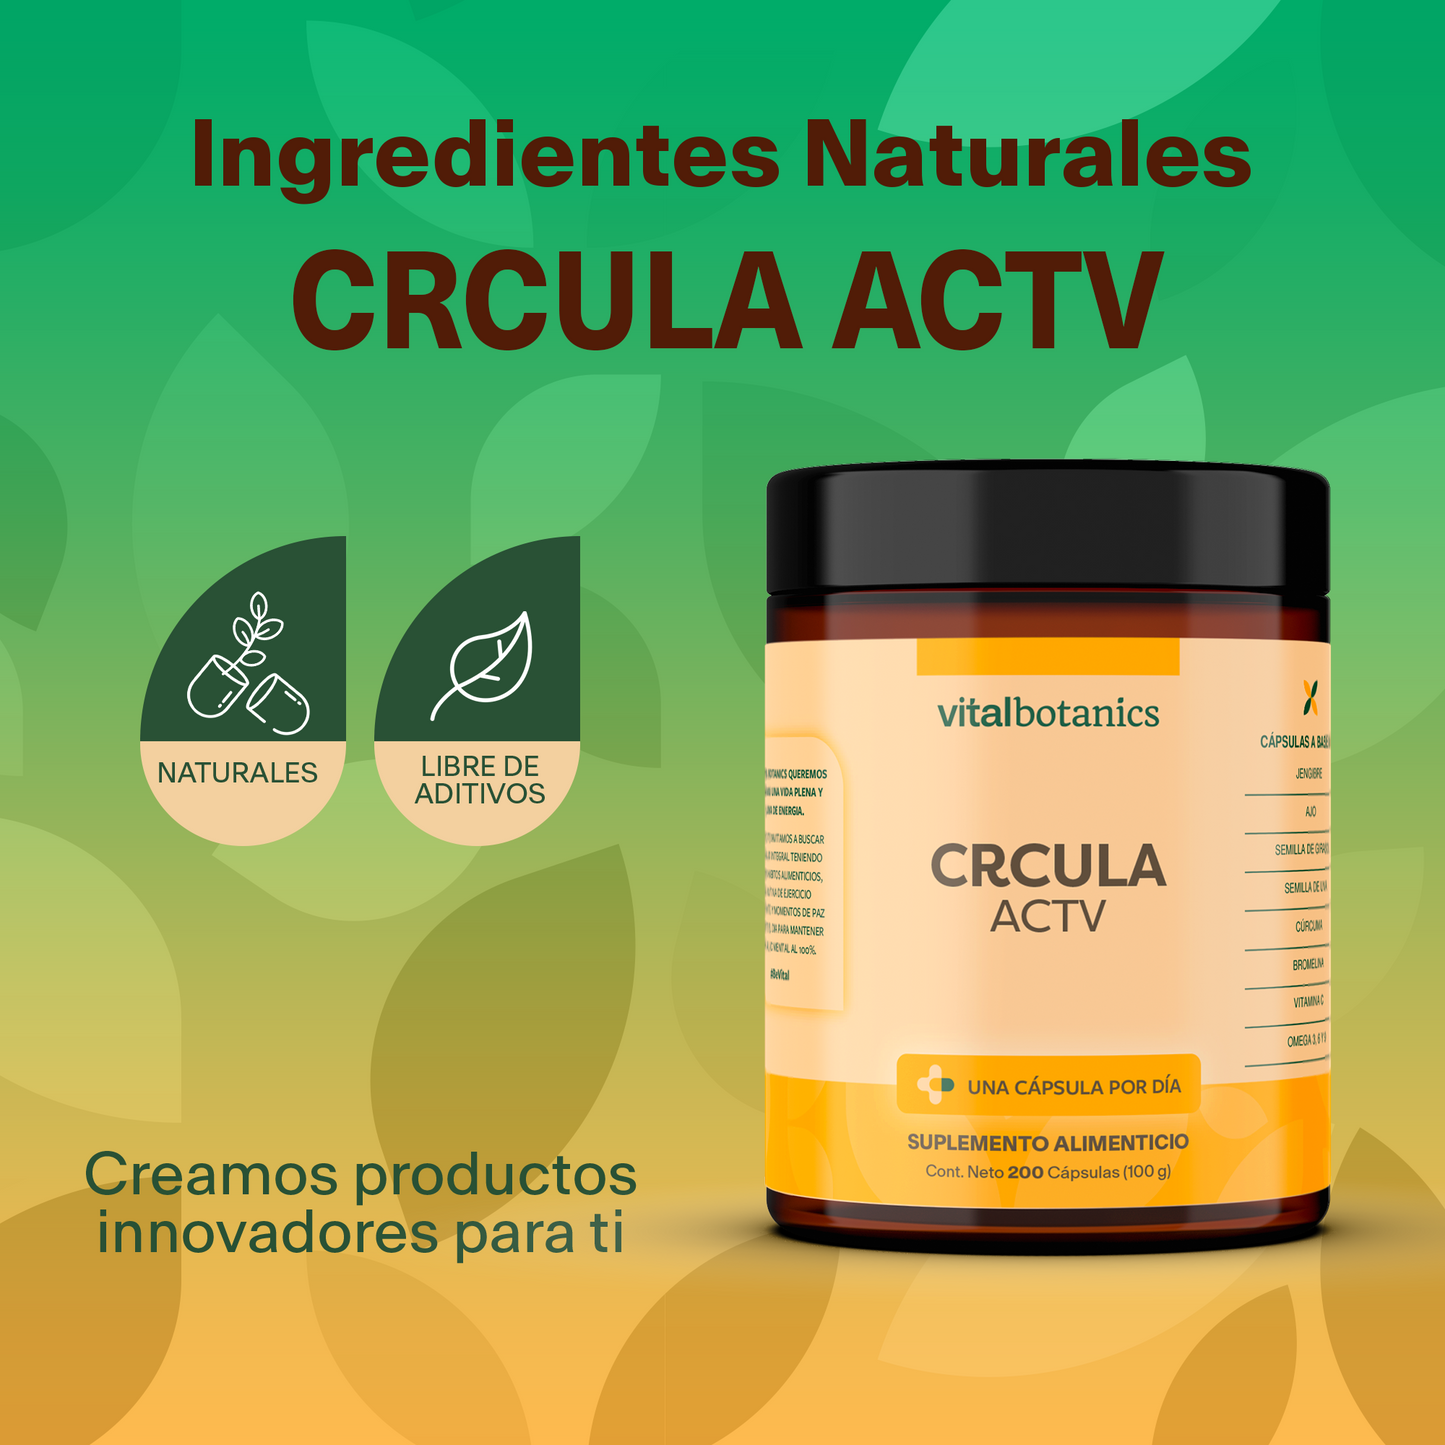 CRCULA ACTV | Vitamina C/Ácido Ascórbico, Ajo, Bromelina, Cúrcuma, Girasol, Jengibre, Uva y Mezcla de Omega 3, 6 y 9